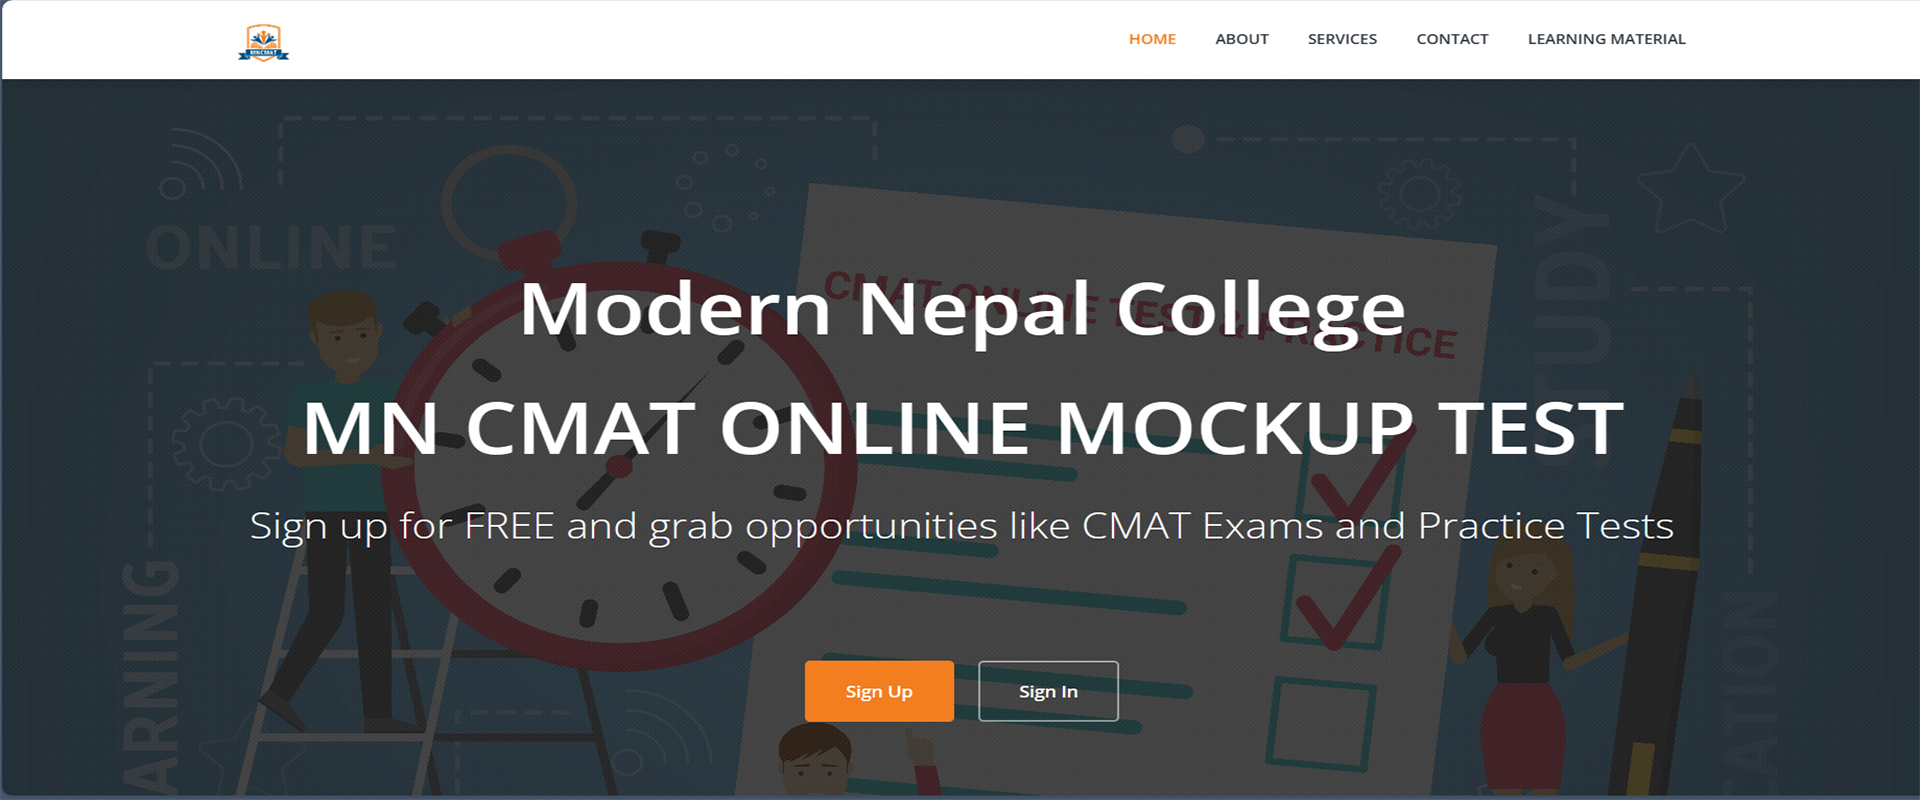 MNCMAT: an online CMAT test application